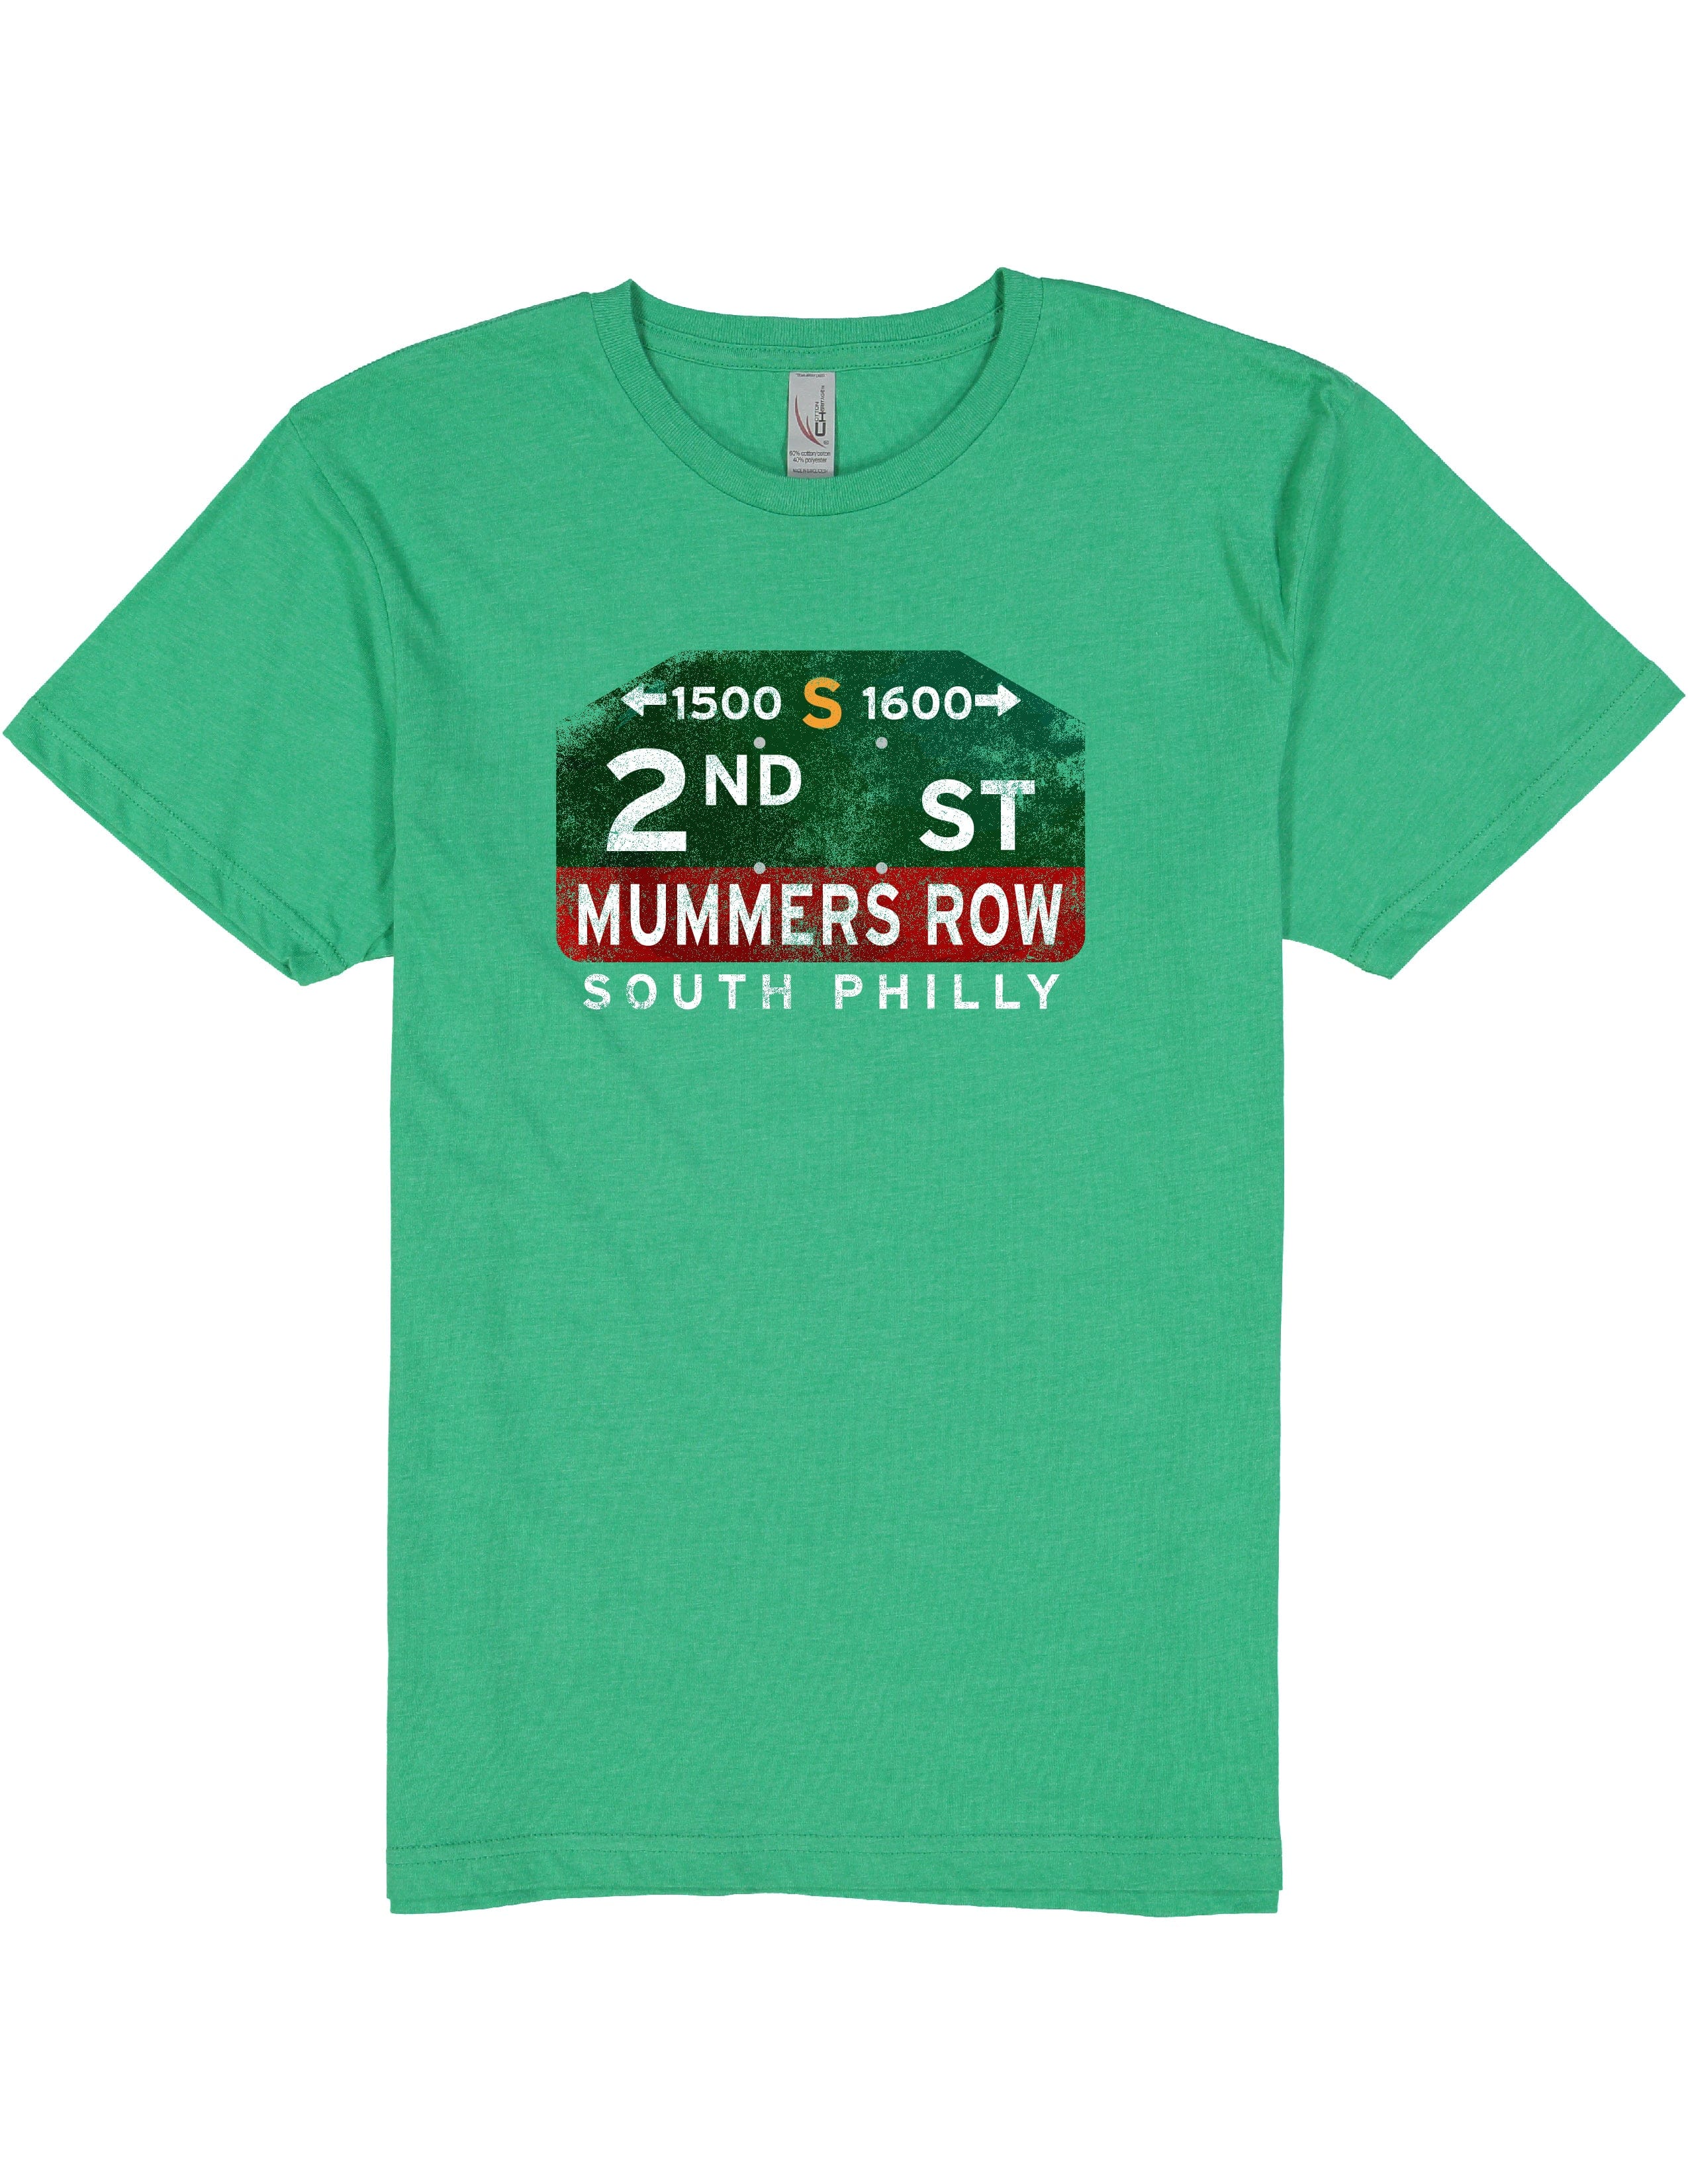 2nd Street Mummers Row Graphic Tee • Philadelphia Mummers Shirt